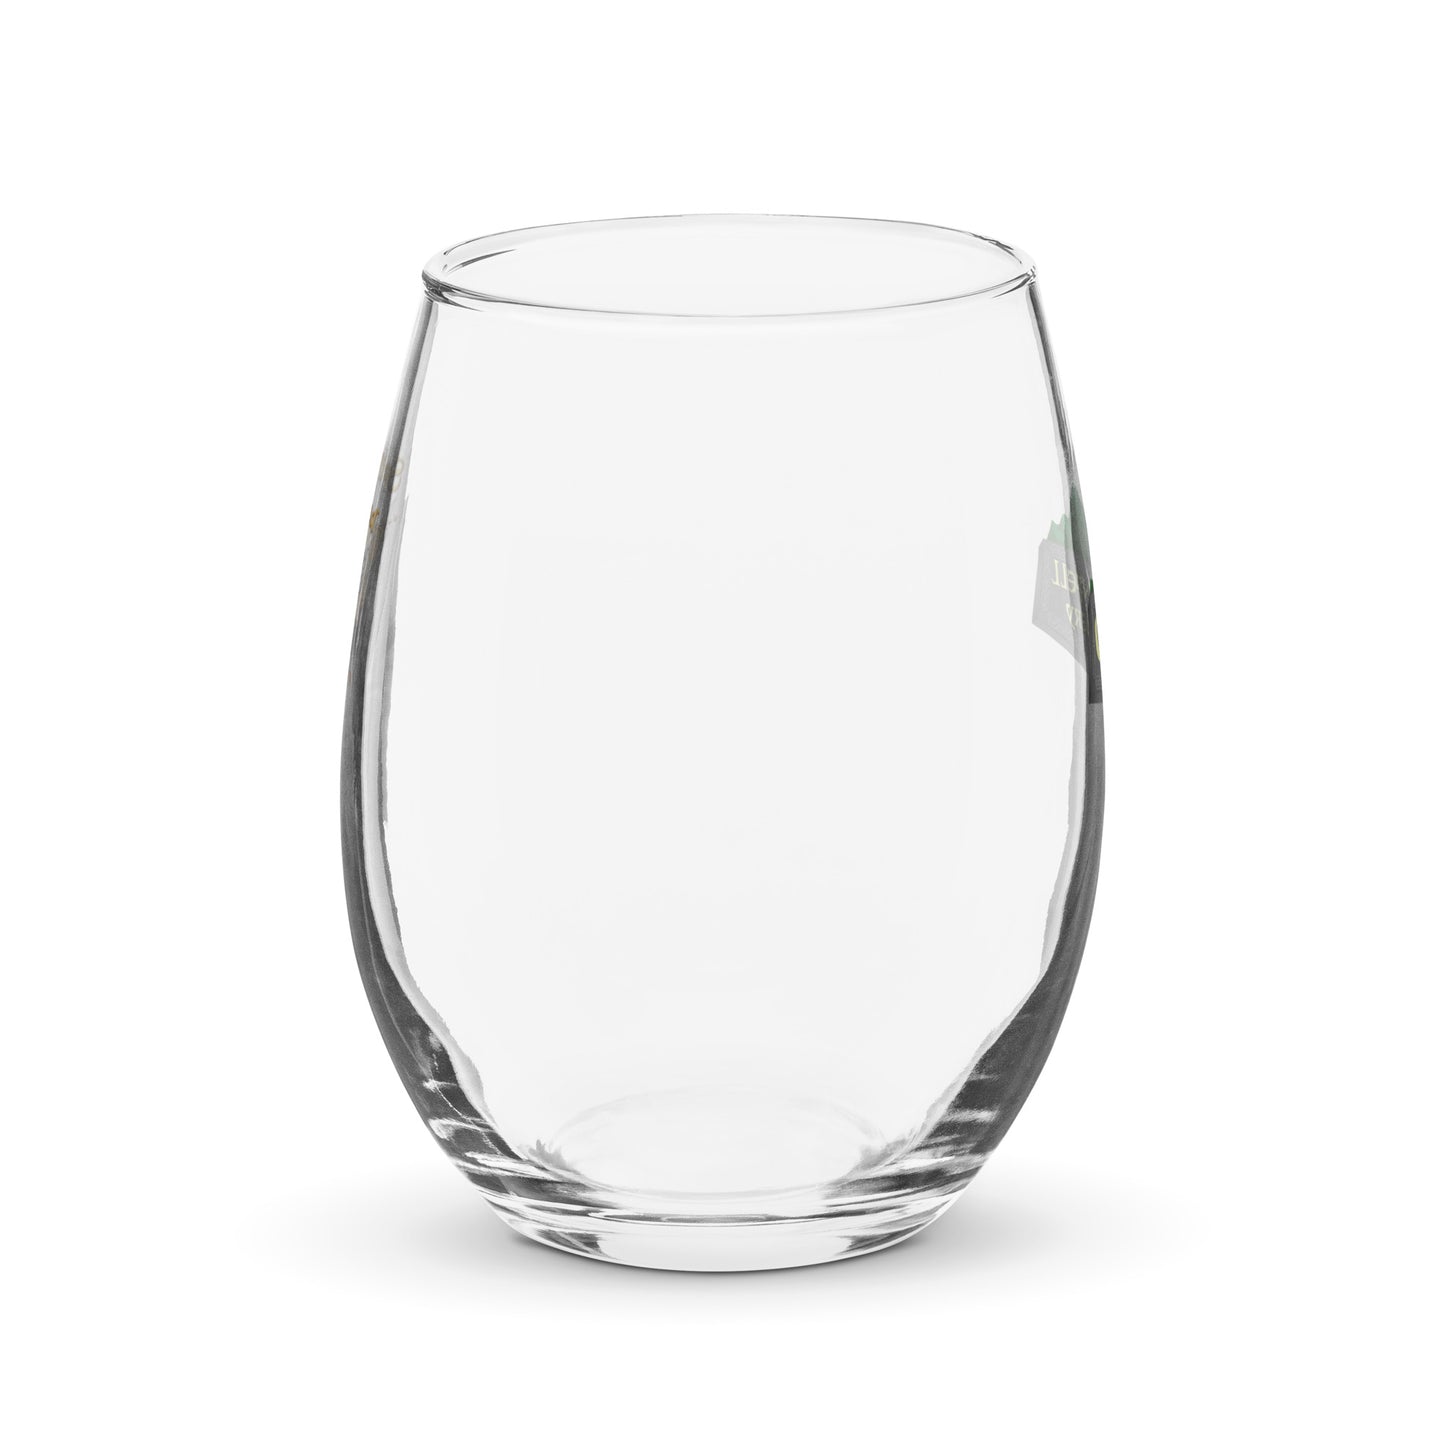 https://groennfell.com/cdn/shop/files/stemless-wine-glass-_15-oz_-front-64b819d170388_1445x.jpg?v=1691095697